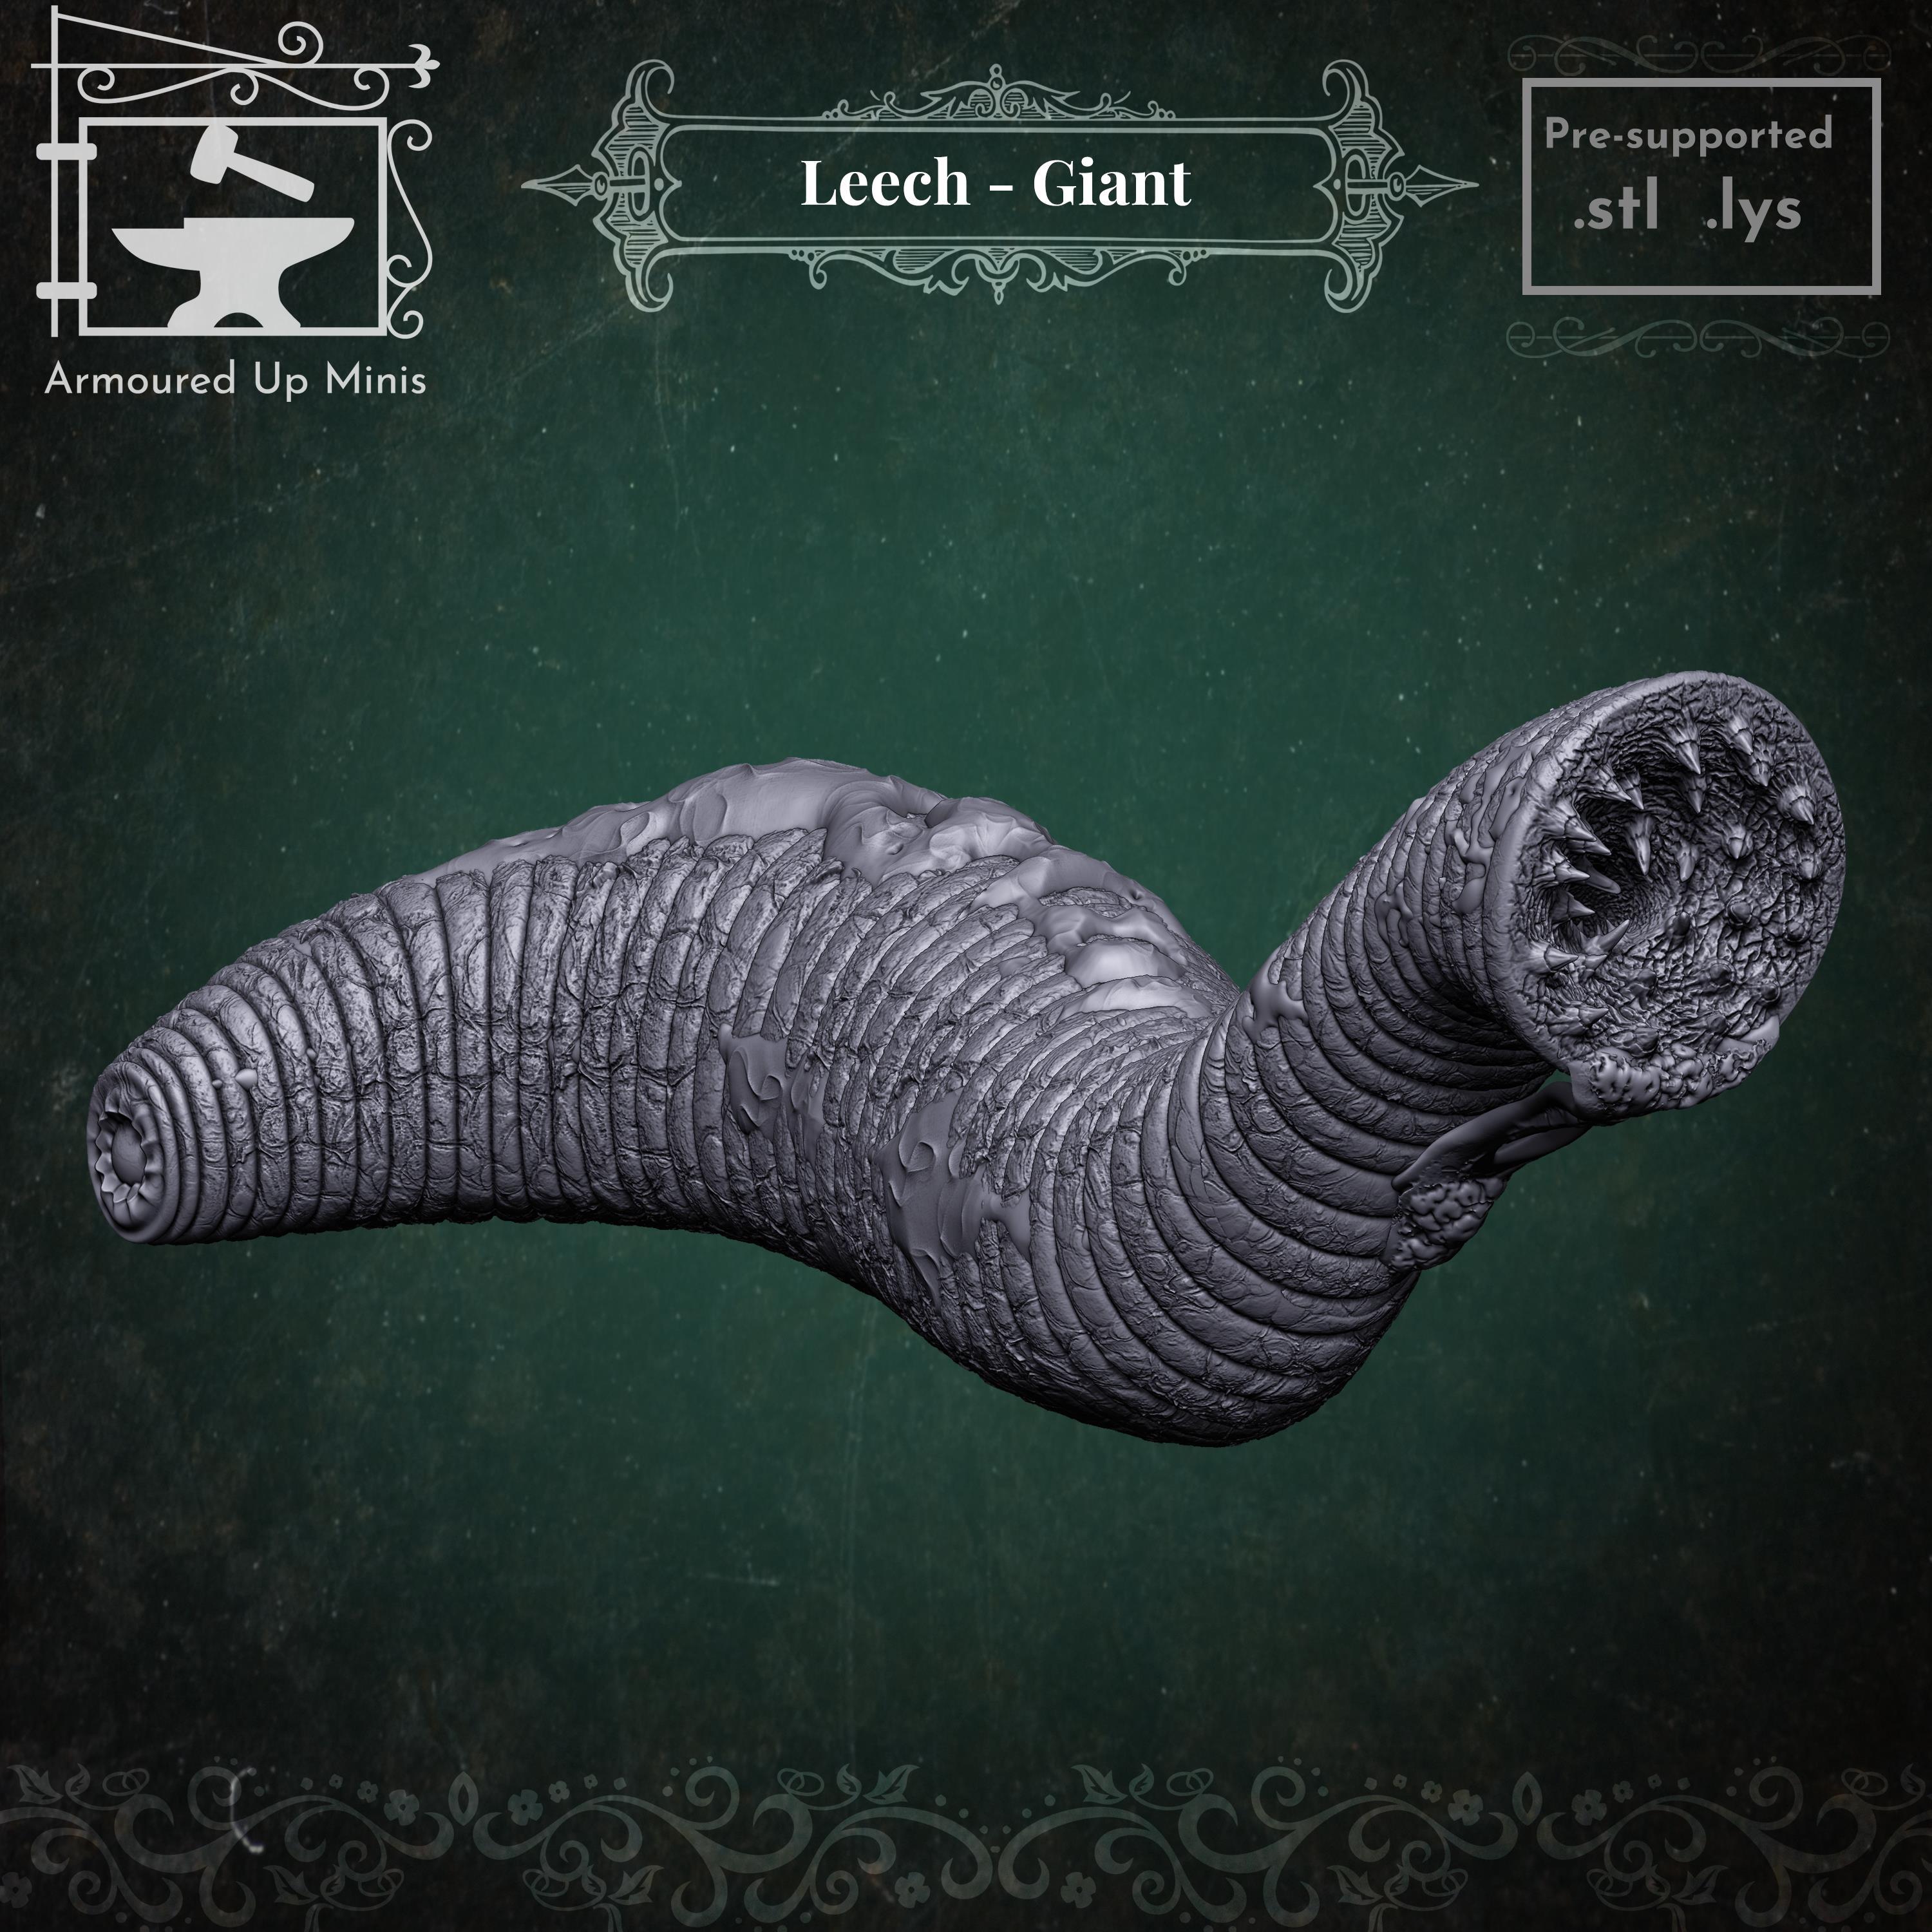 Leech - Giant 3d model